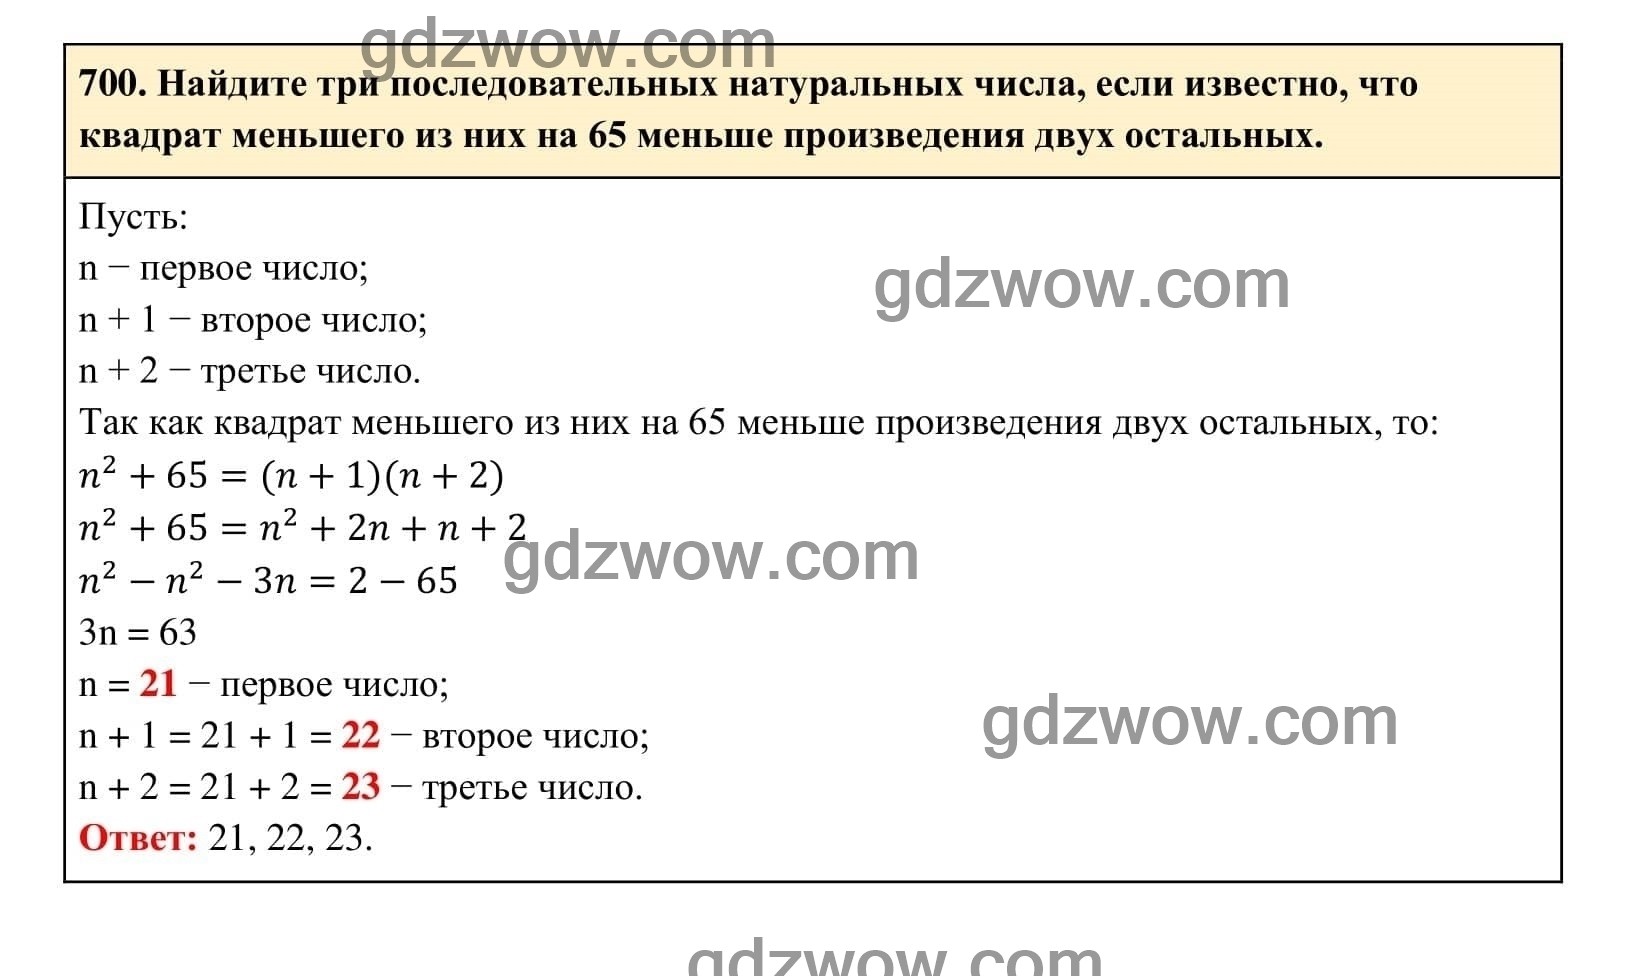 Упражнение 700 - ГДЗ по Алгебре 7 класс Учебник Макарычев (решебник) - GDZwow